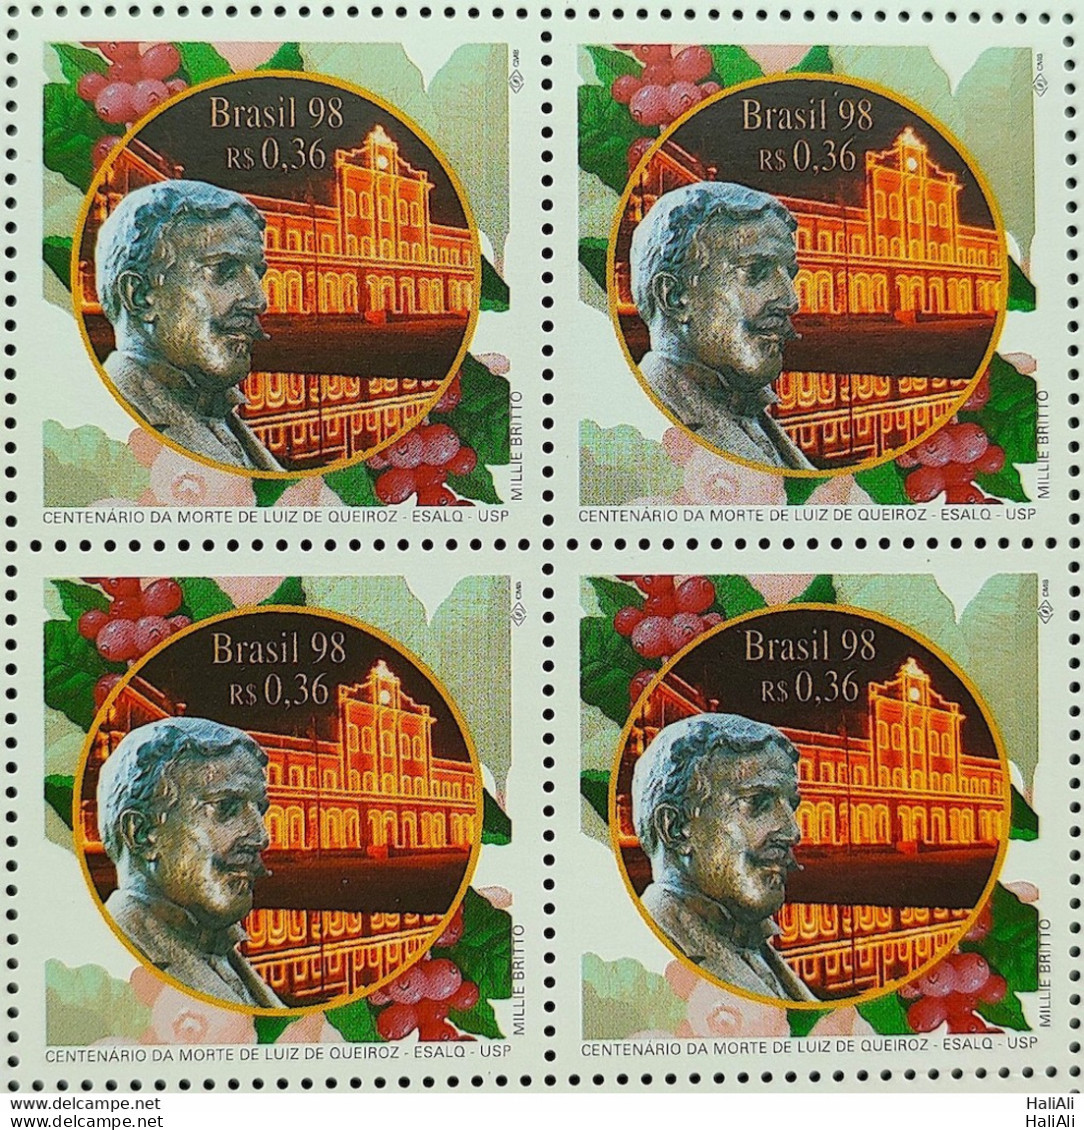 C 2141 Brazil Stamp Luiz De Queiroz Esalq Education Agriculture USP 1998 Block Of 4 - Unused Stamps